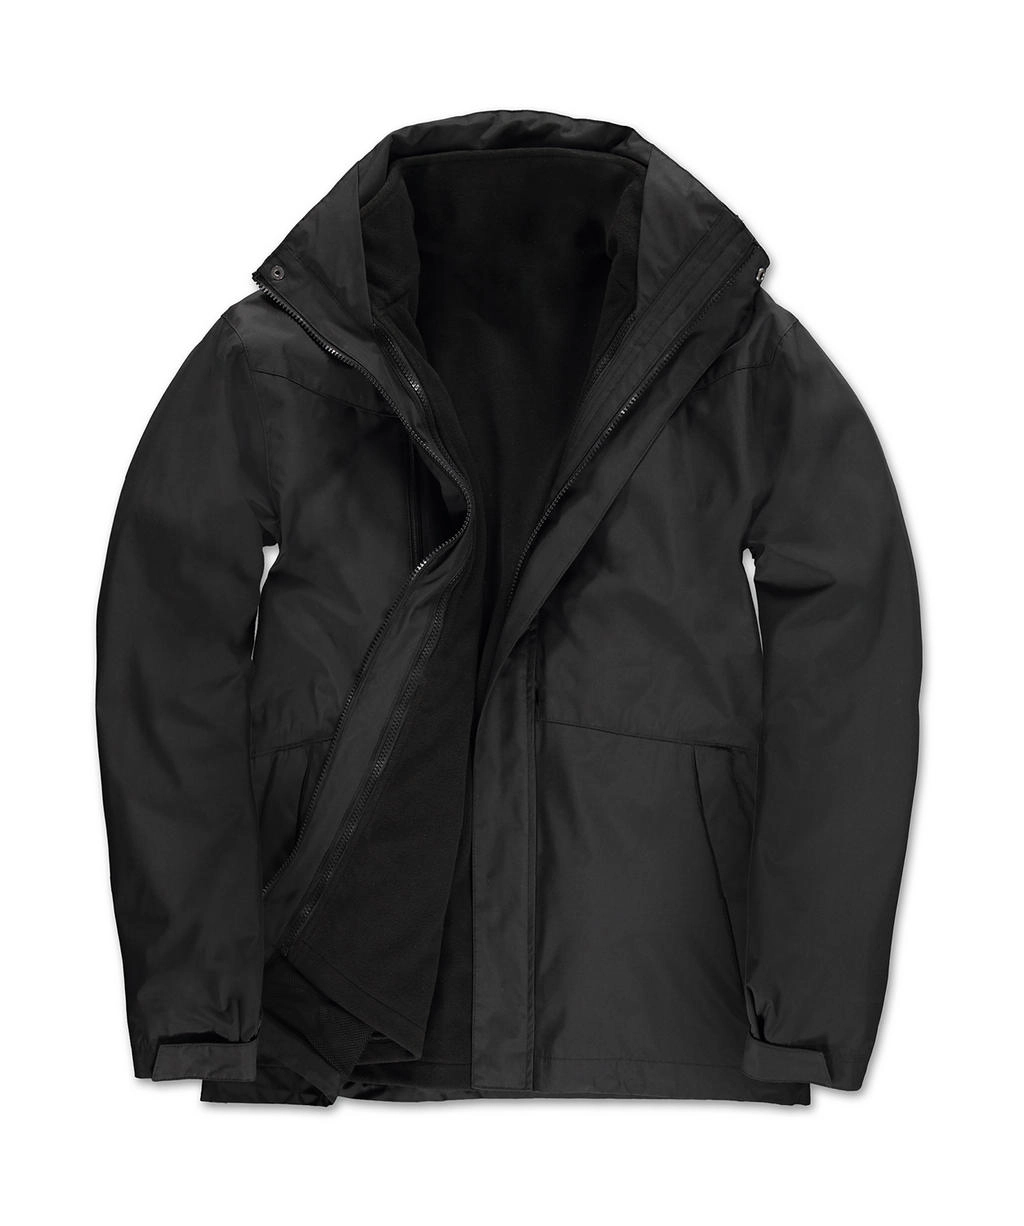 Corporate 3-in-1 Jacket zum Besticken und Bedrucken in der Farbe Black mit Ihren Logo, Schriftzug oder Motiv.